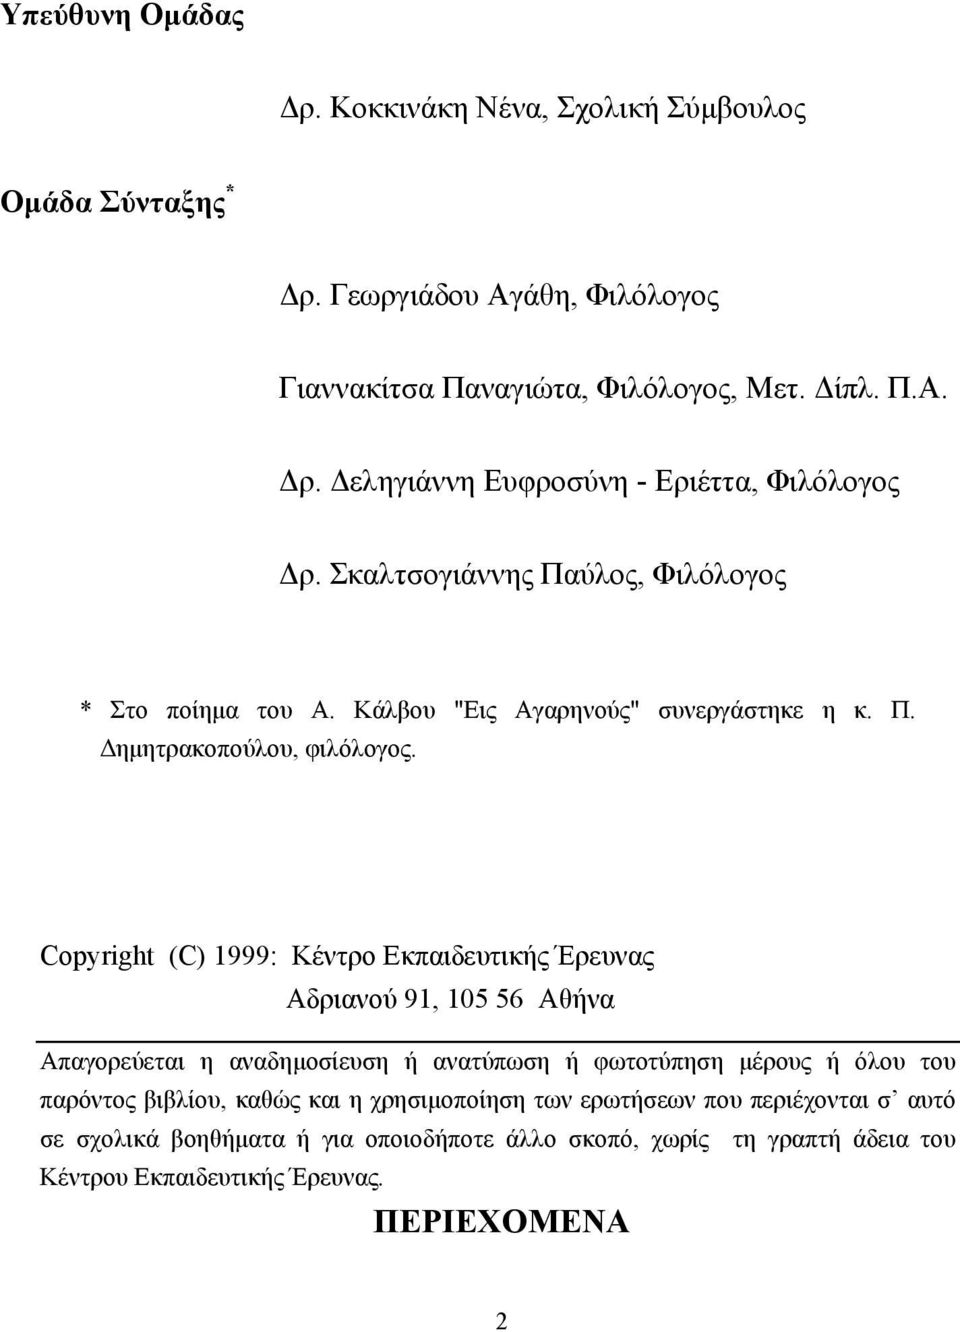 Copyright (C) 1999: Κέντρο Εκπαιδευτικής Έρευνας Αδριανού 91, 105 56 Αθήνα Απαγορεύεται η αναδηµοσίευση ή ανατύπωση ή φωτοτύπηση µέρους ή όλου του παρόντος βιβλίου,